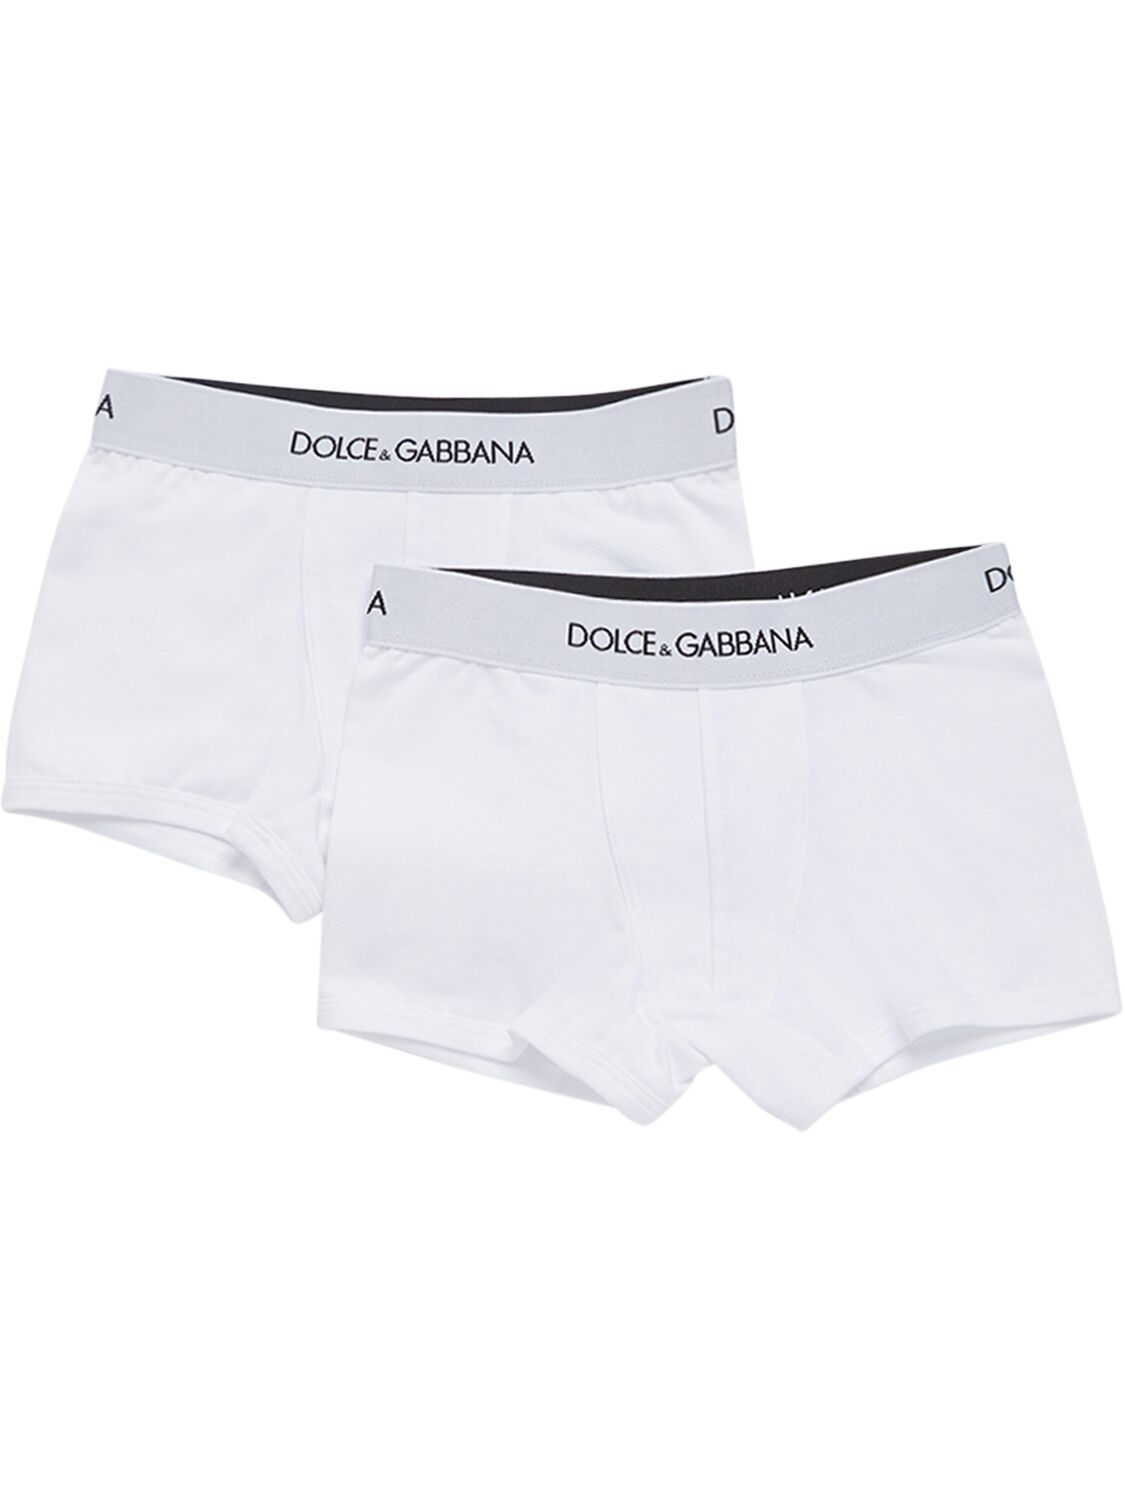 Dolce & Gabbana Kids' Logo棉质平角内裤2件套装 In White